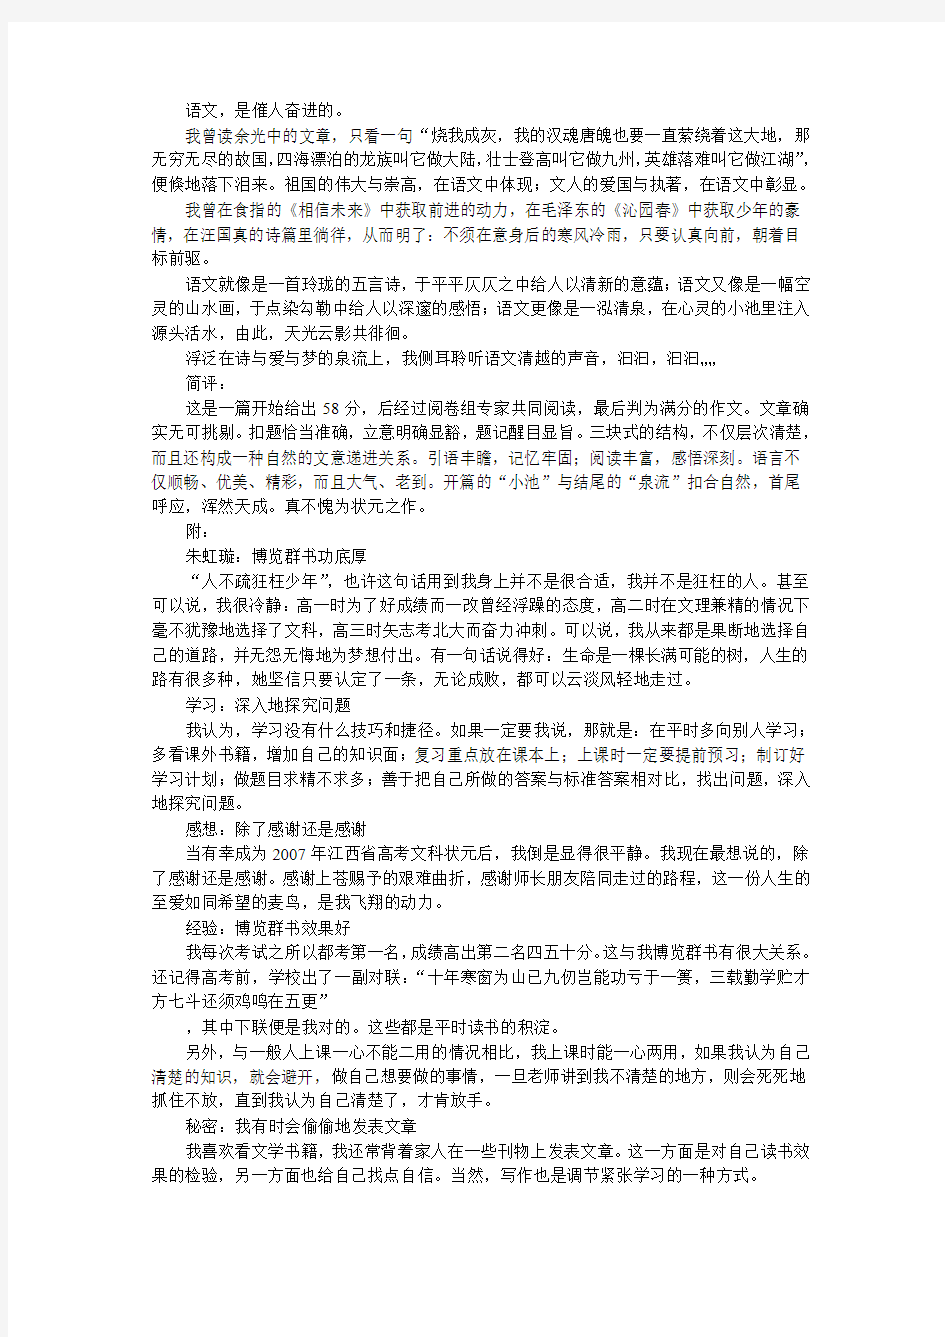 2007年江西省高考女状元高考满分作文——语文,心中的一泓清泉